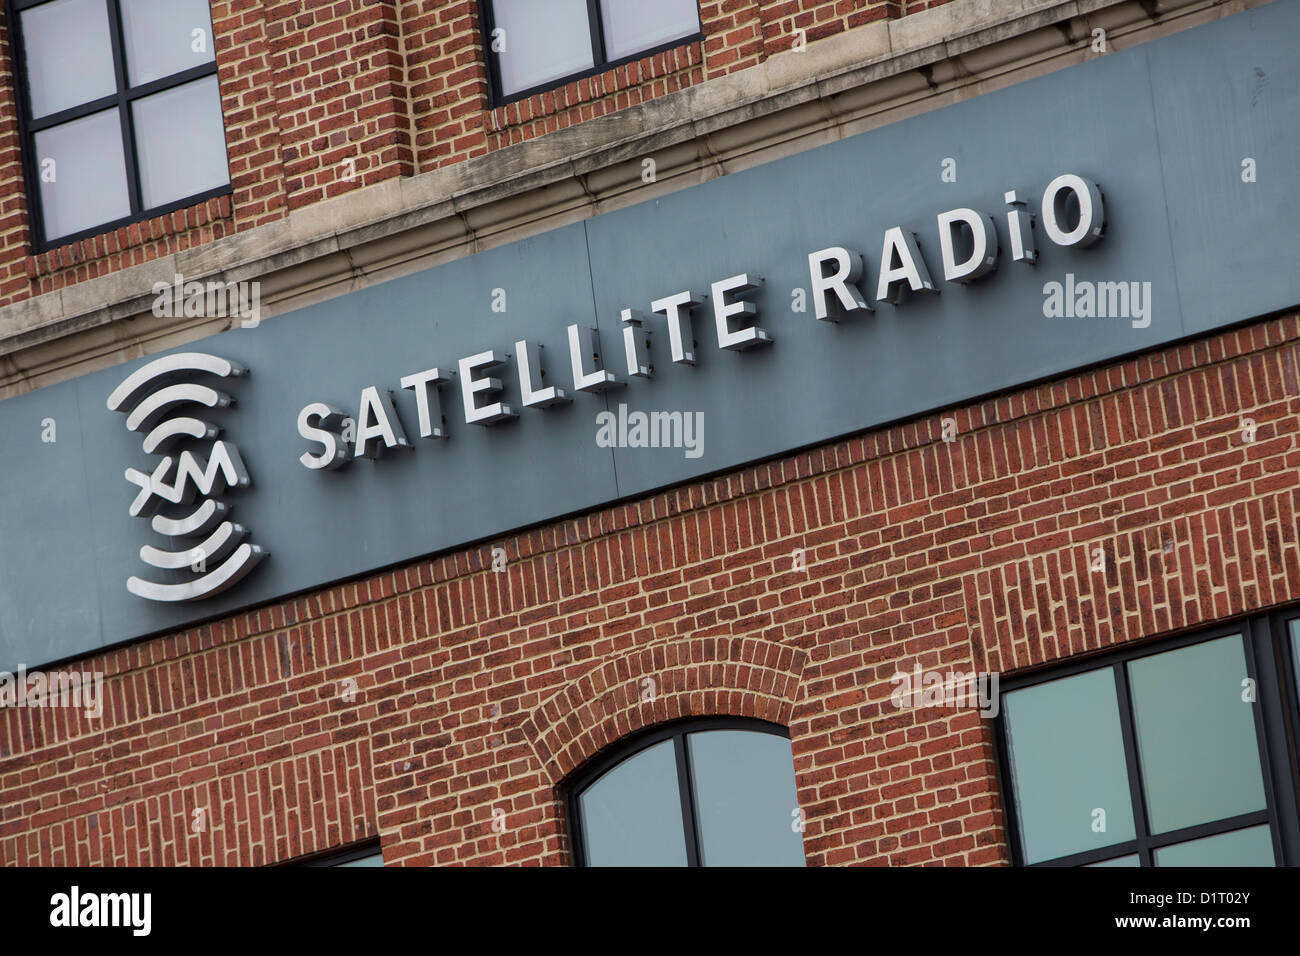 Le siège de la Radio Satellite XM. Banque D'Images